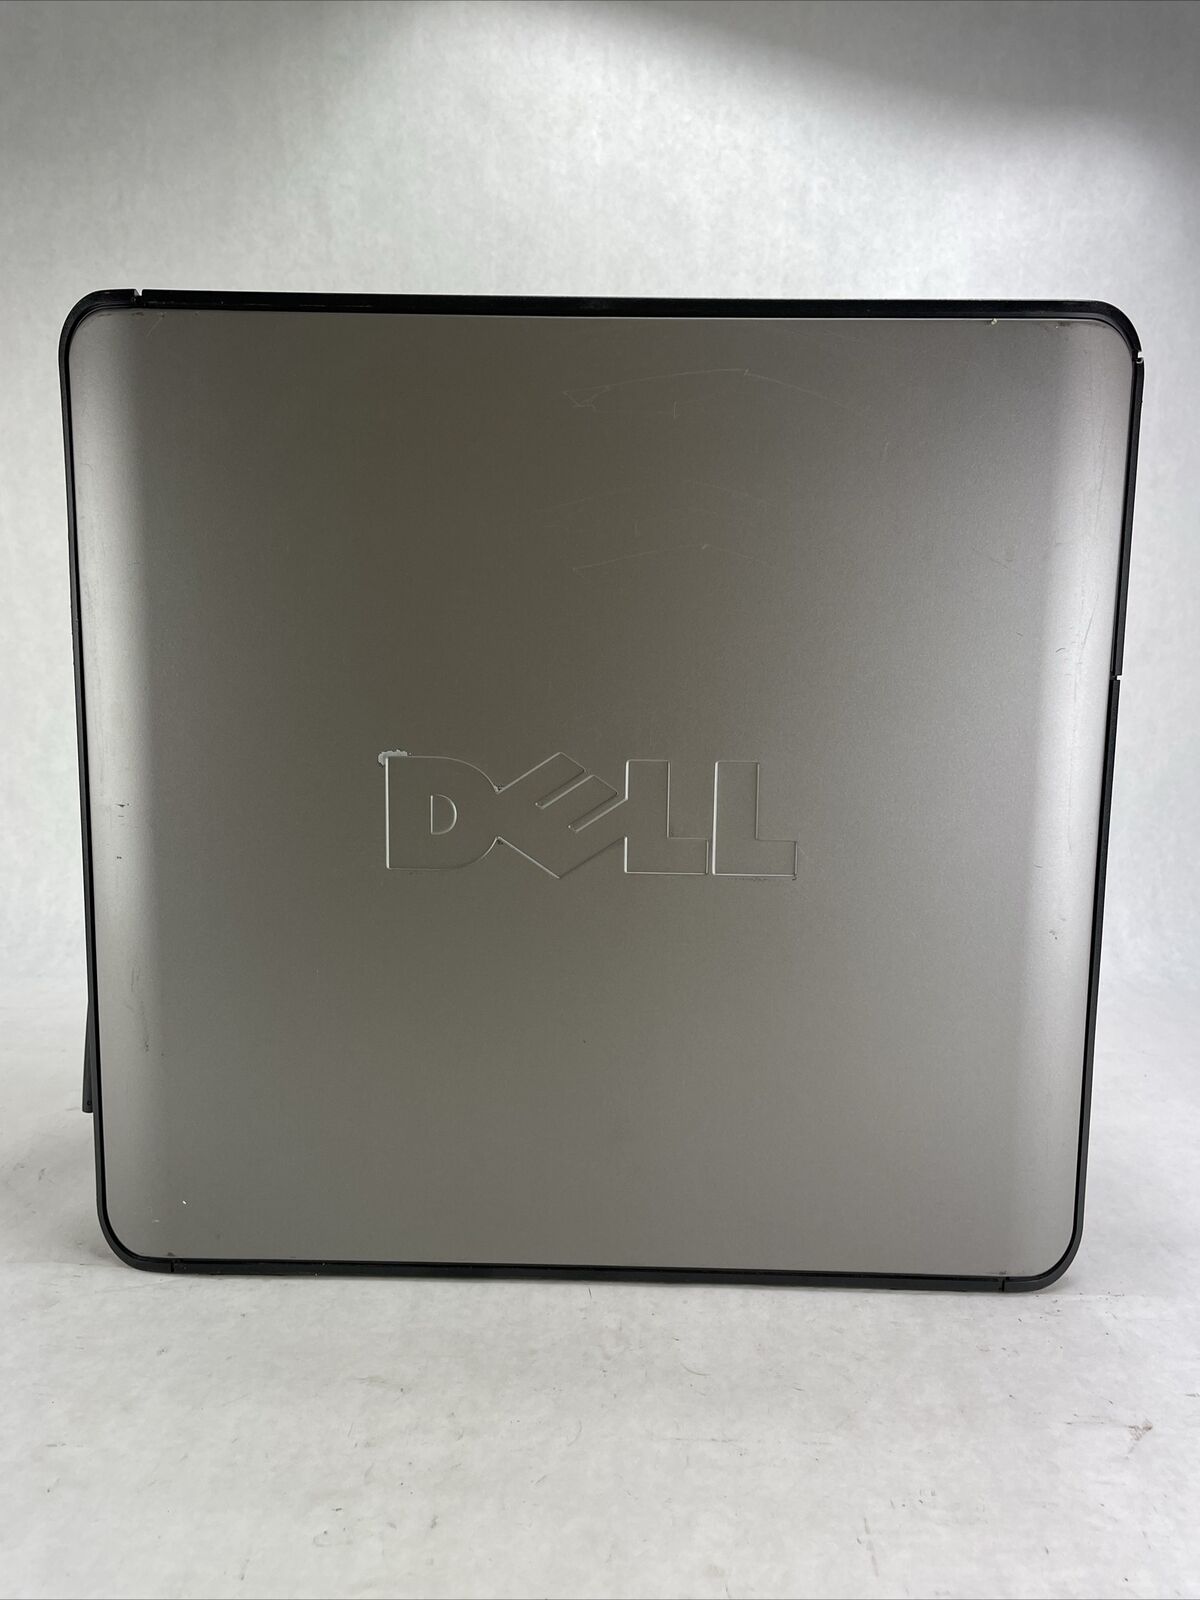 Dell Optiplex 380 MT Intel Core 2 Duo E7500 2.93GHz 2GB RAM No HDD No OS